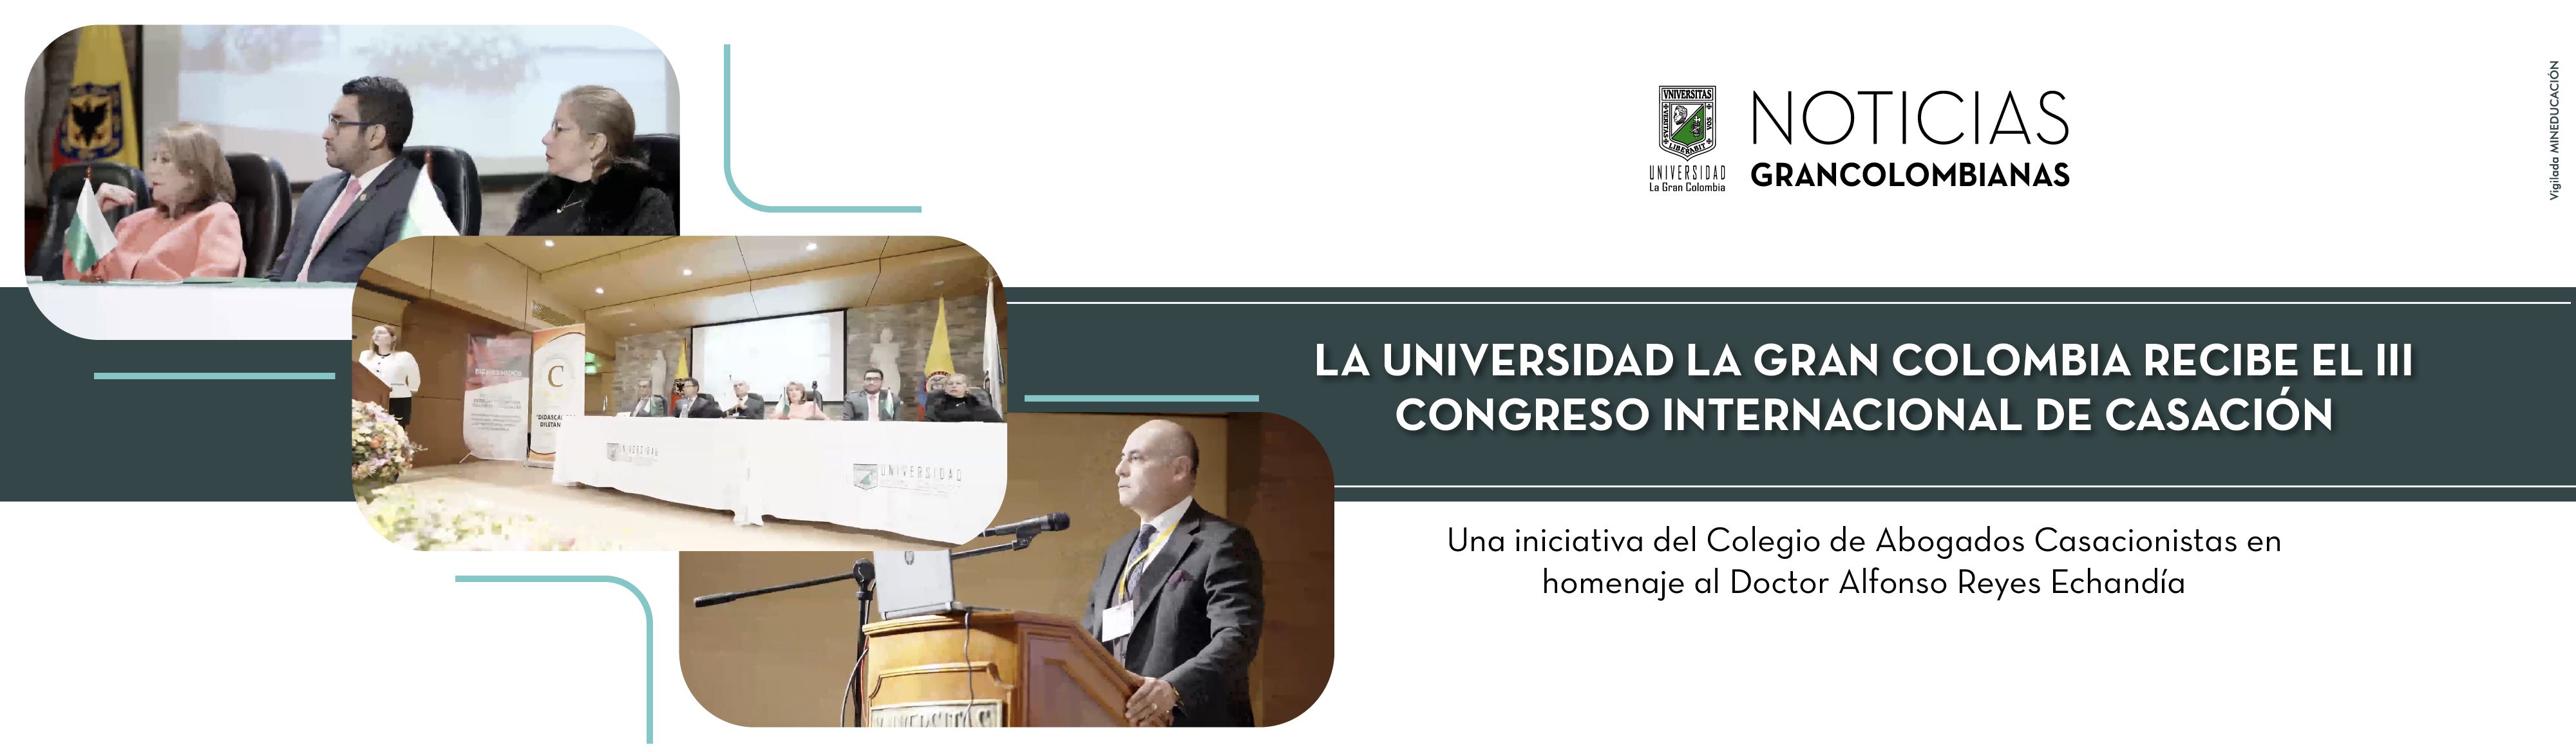 La Universidad La Gran Colombia recibe el III Congreso Internacional de Casación